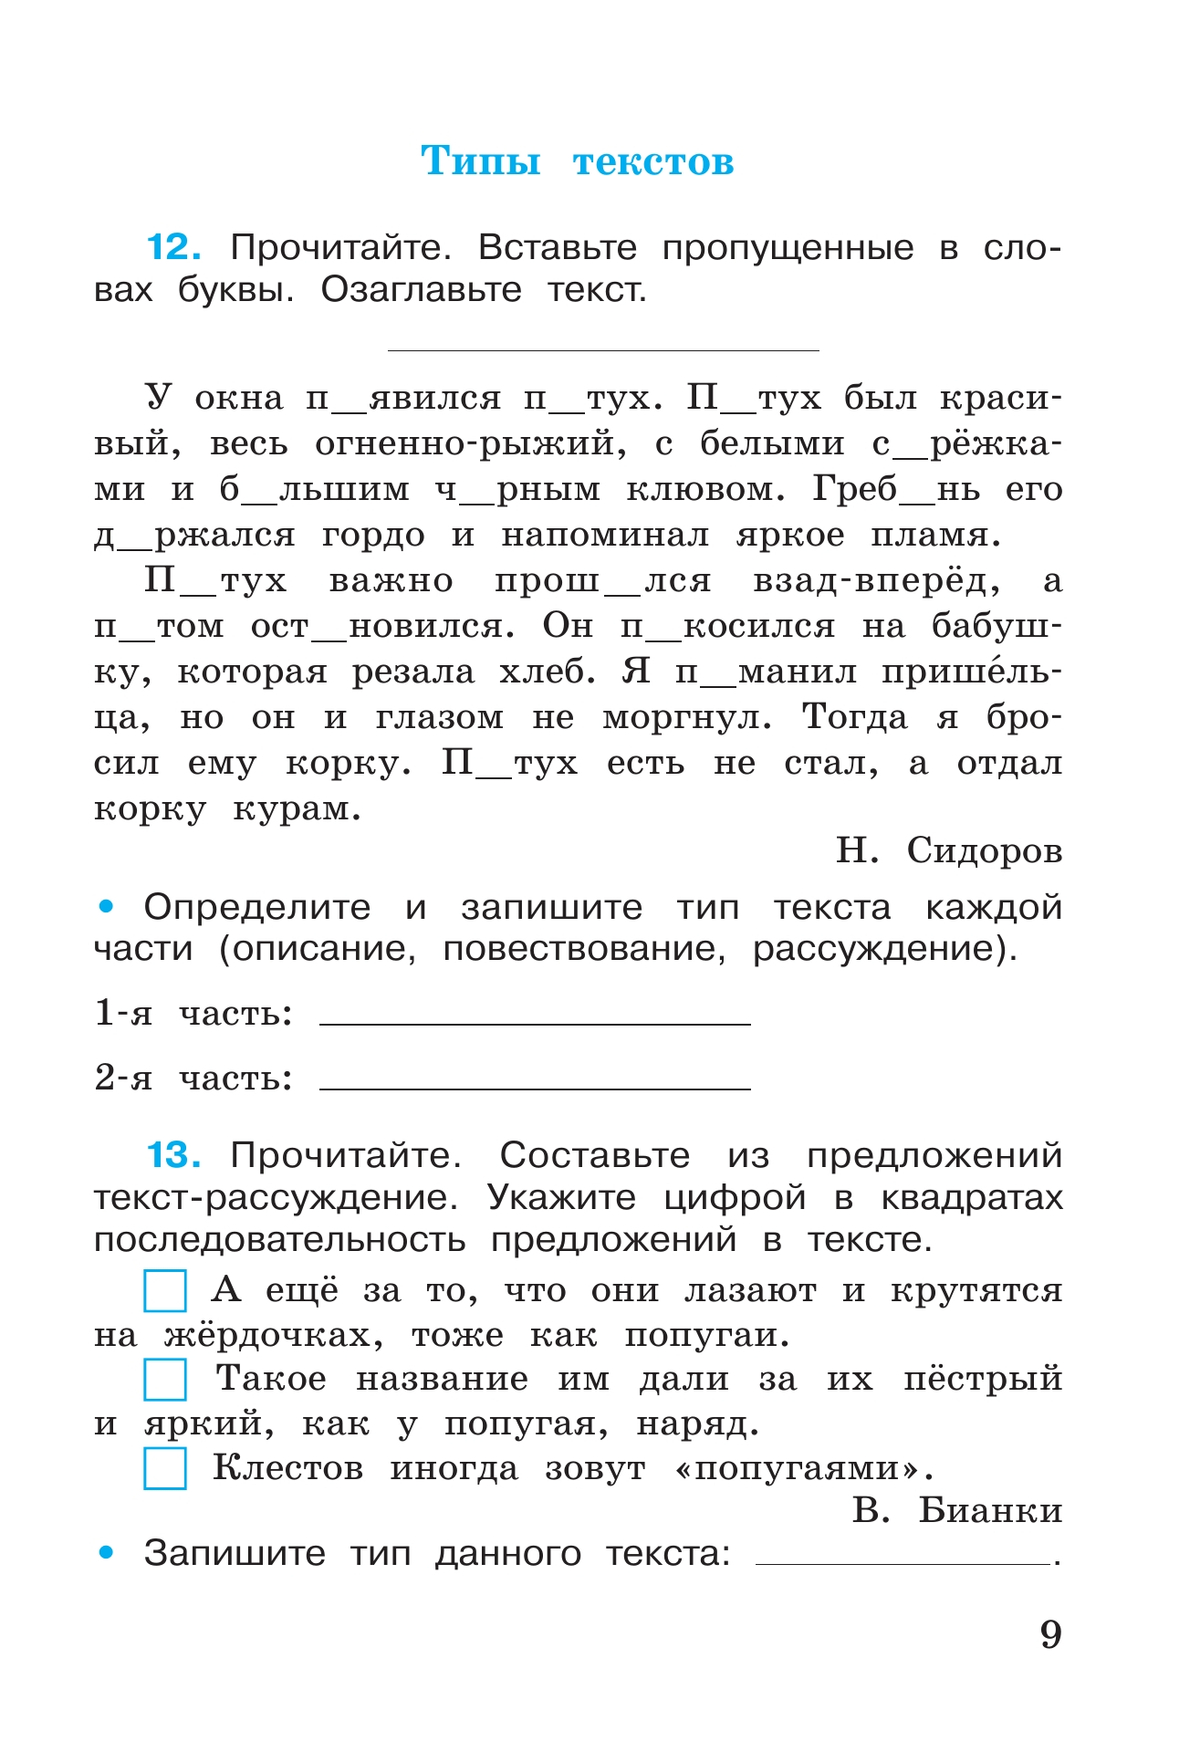 Русский язык. Рабочая тетрадь. 4 класс. В 2 частях. Часть 1 8